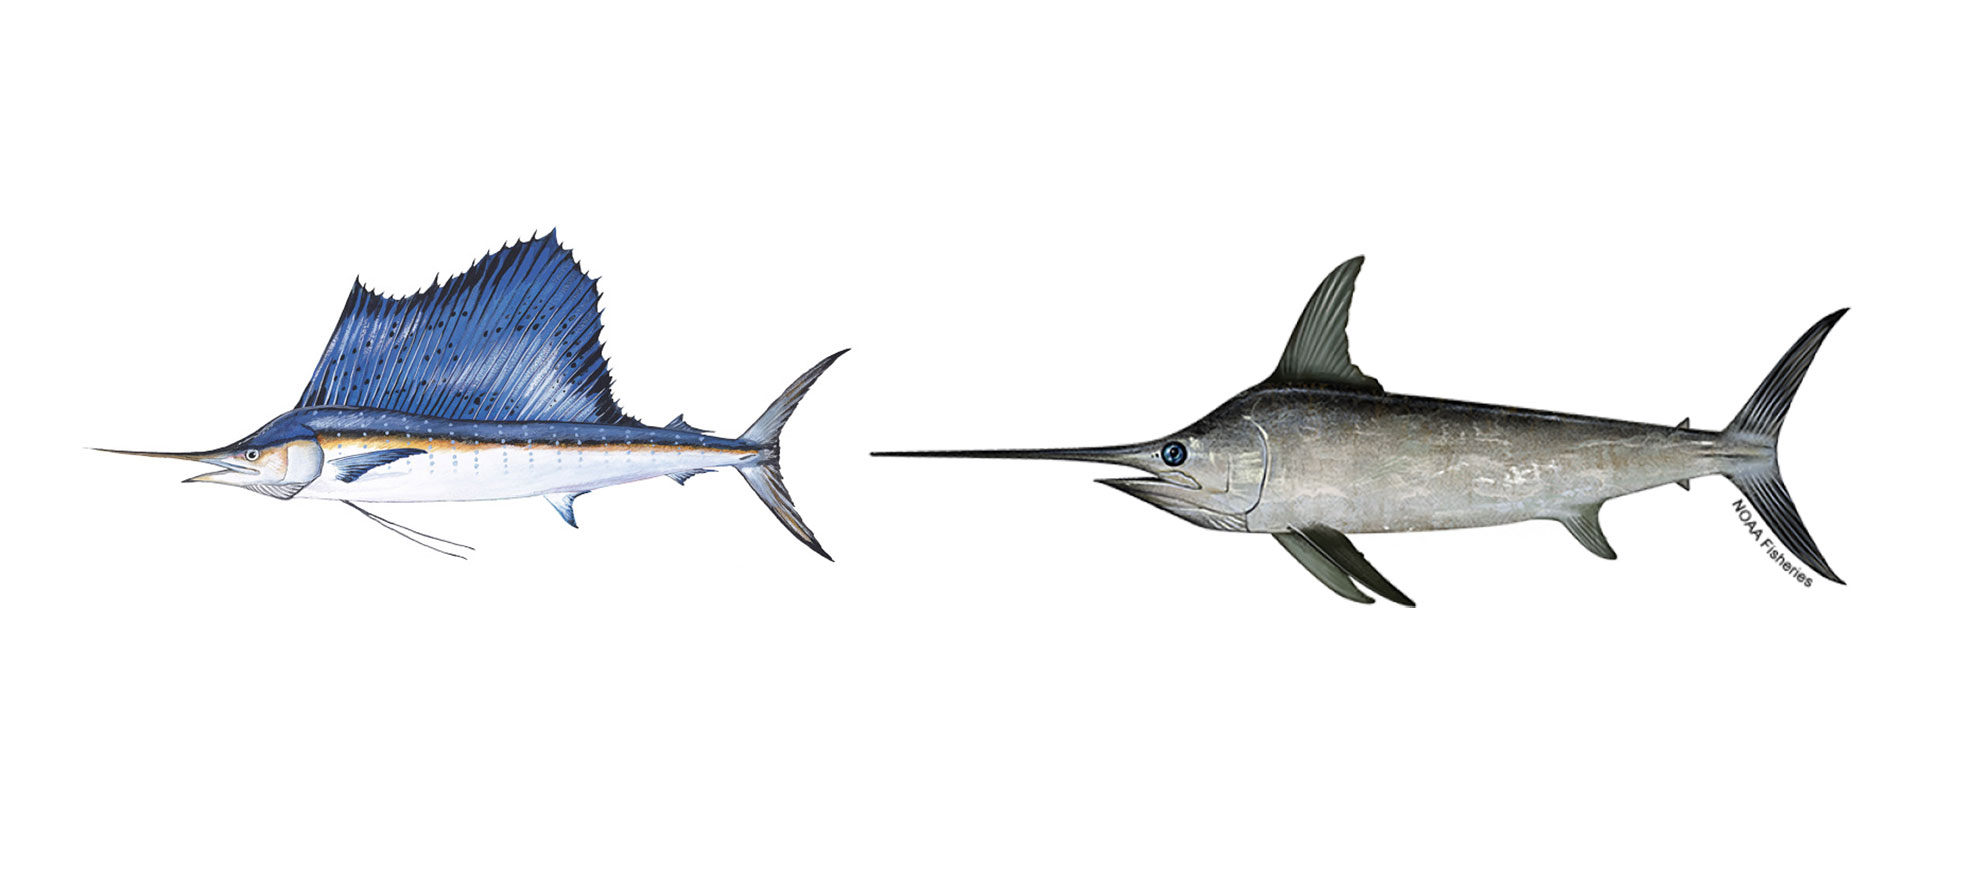 sailfish vs swordfish